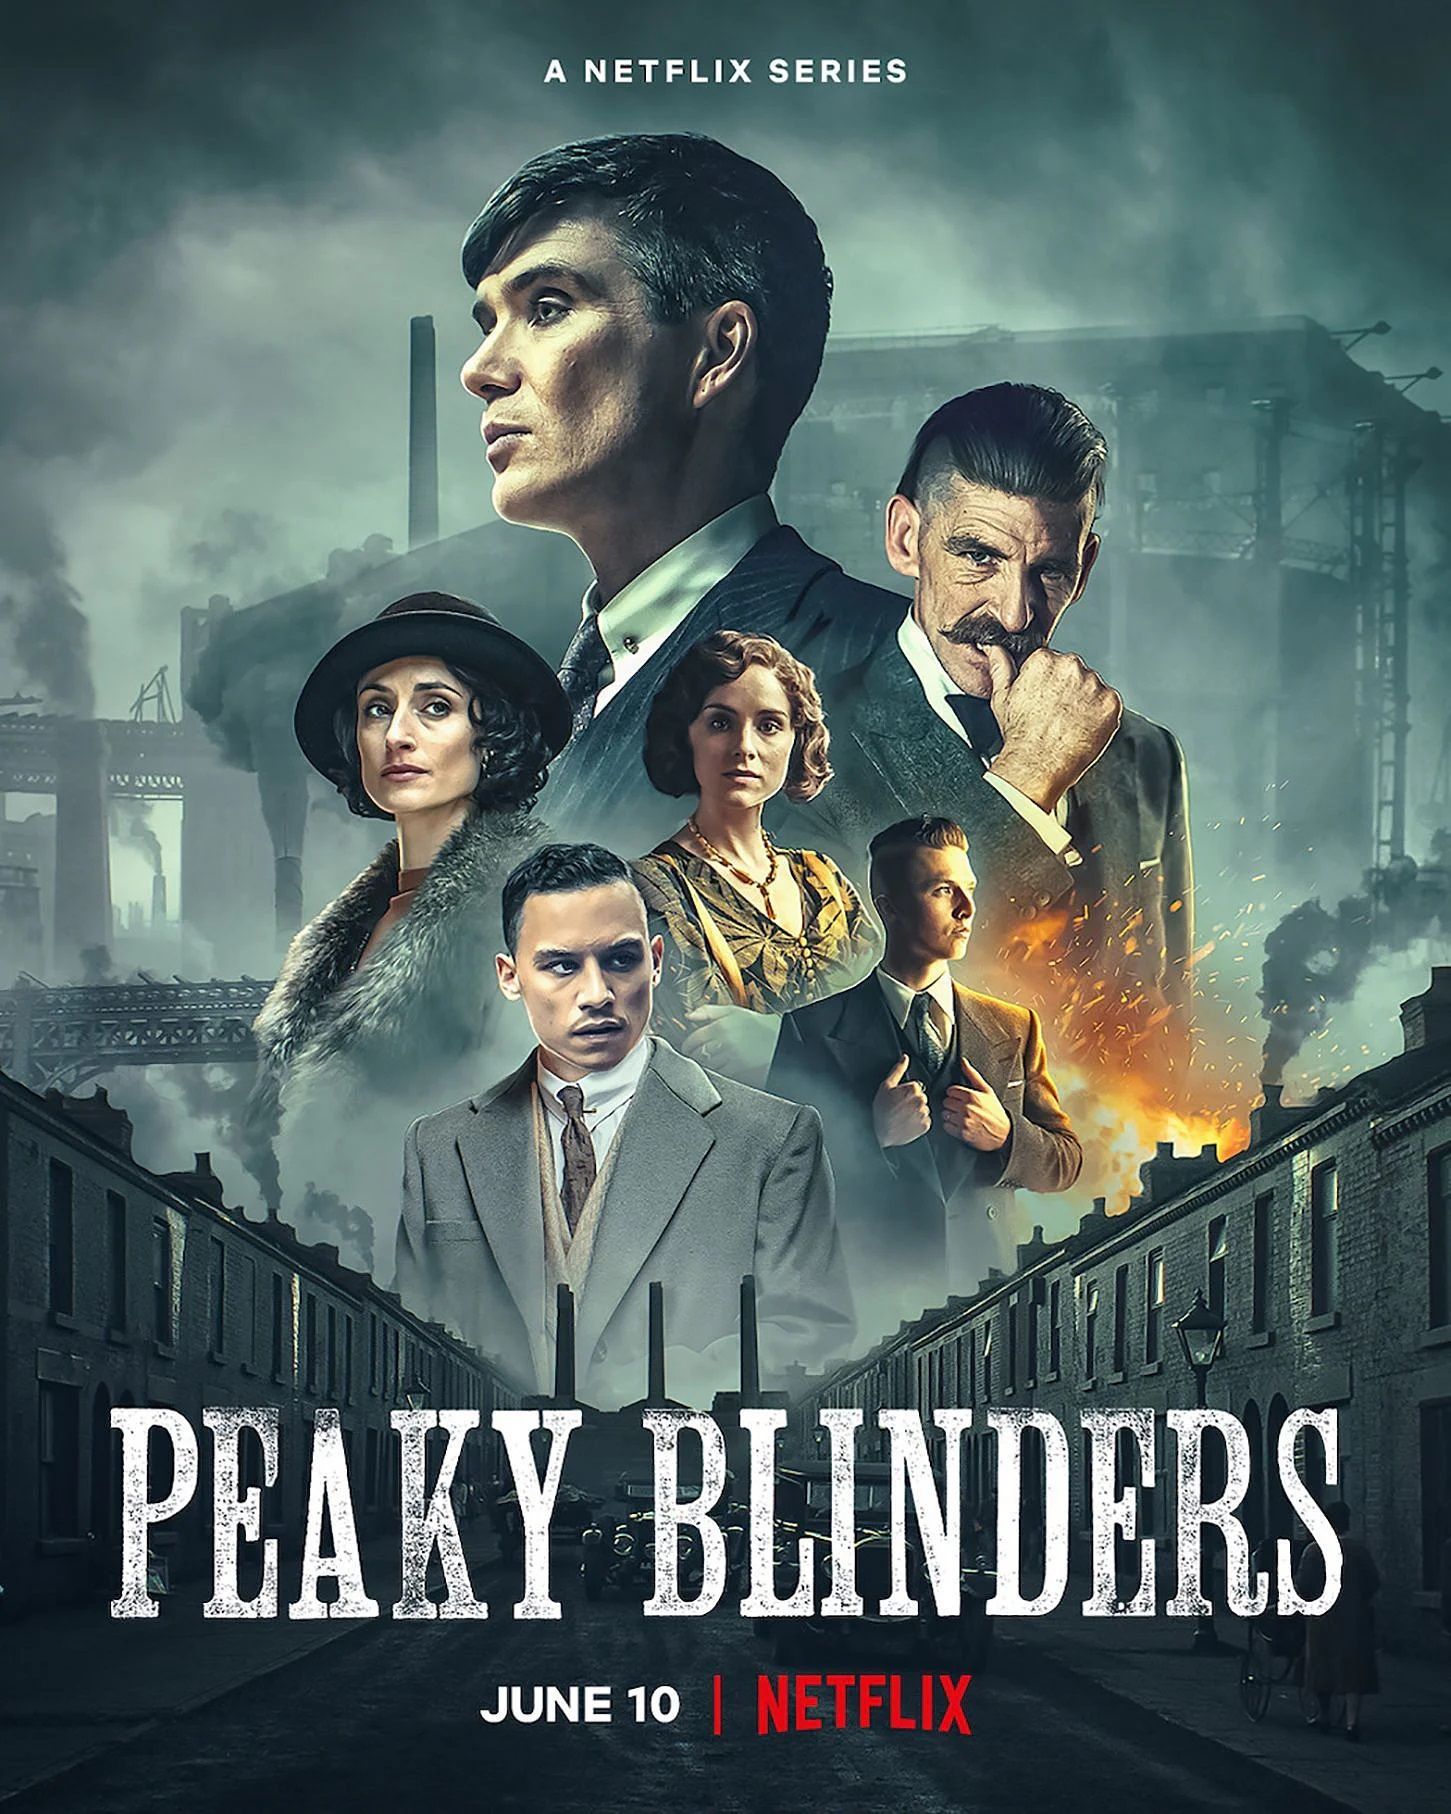 Peaky Blinders movie, spinoff plans